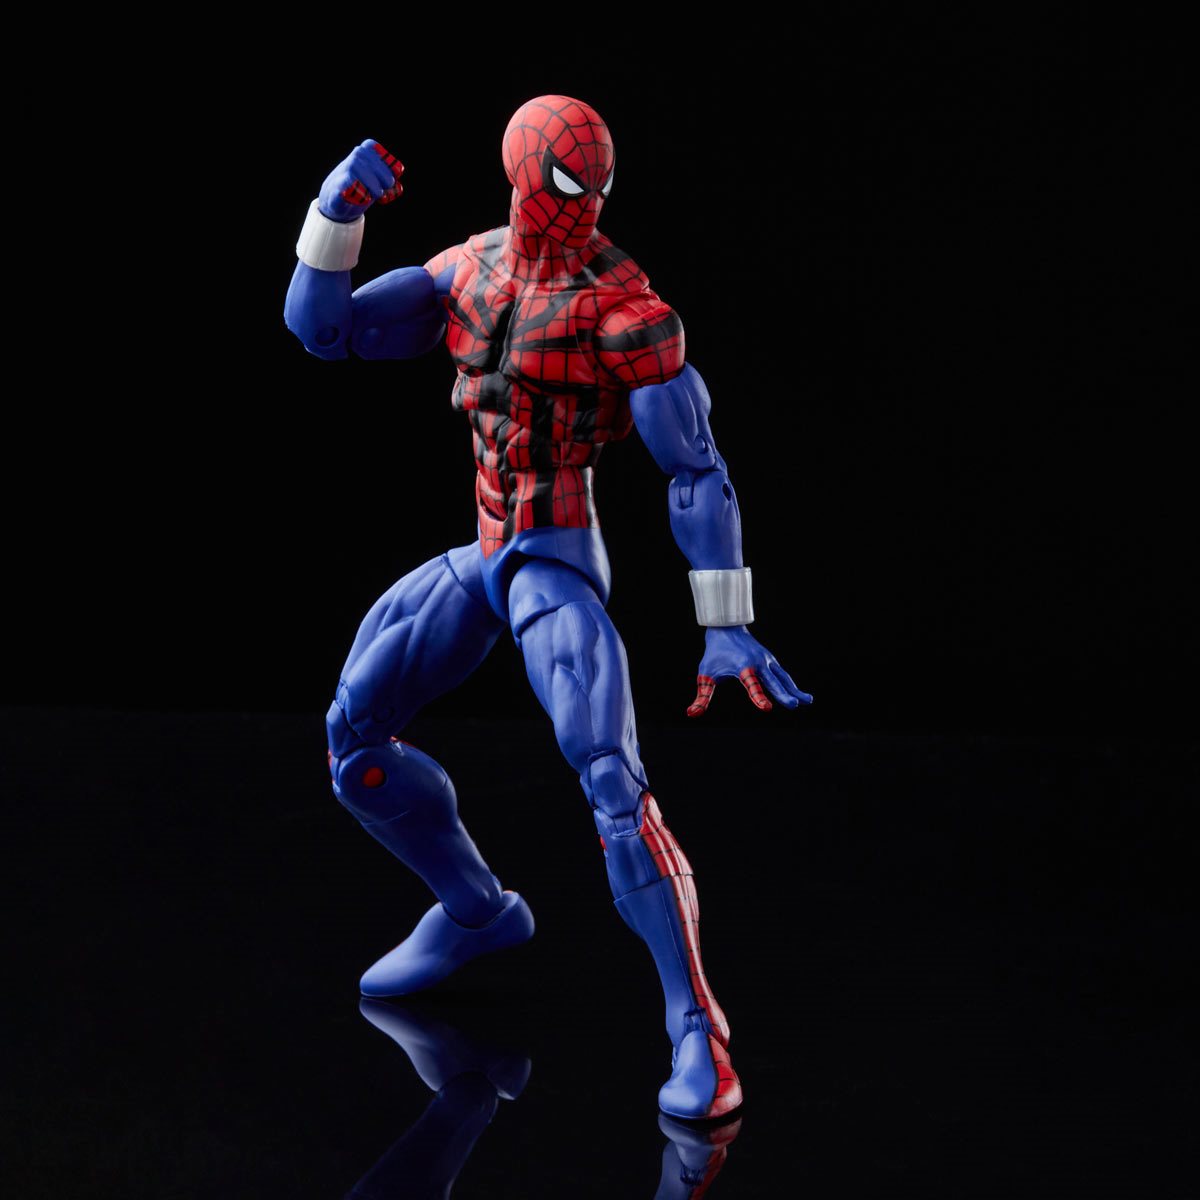 Marvel Legends Spider-Man Classic Series Ben Reilly Spider-Man 6" Action Figure 